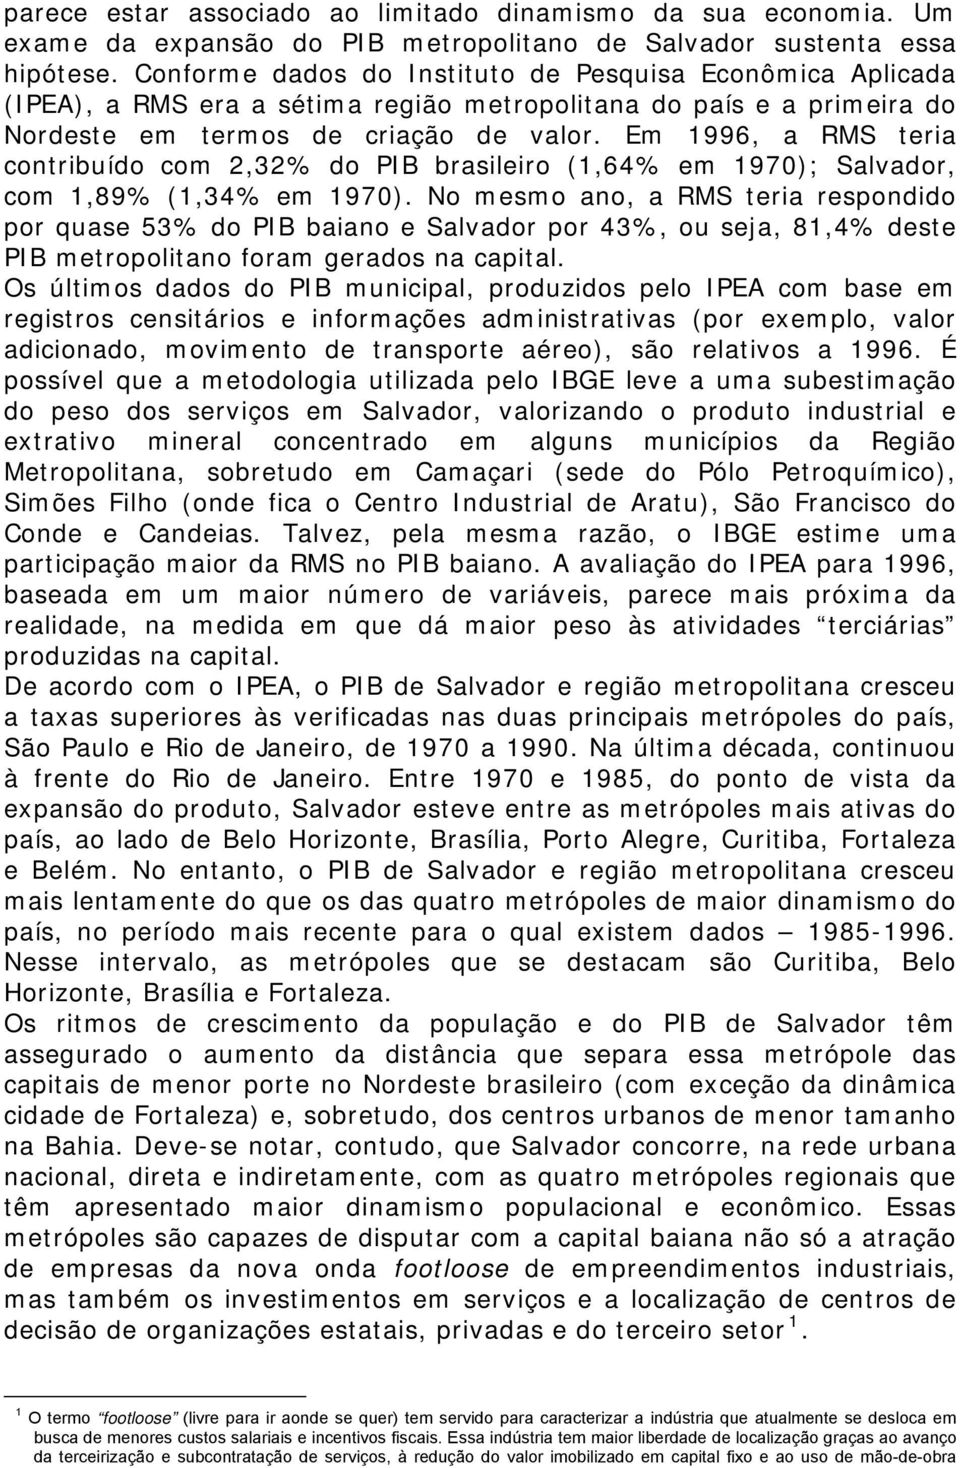 Em 1996, a RMS teria contribuído com 2,32% do PIB brasileiro (1,64% em 1970); Salvador, com 1,89% (1,34% em 1970).